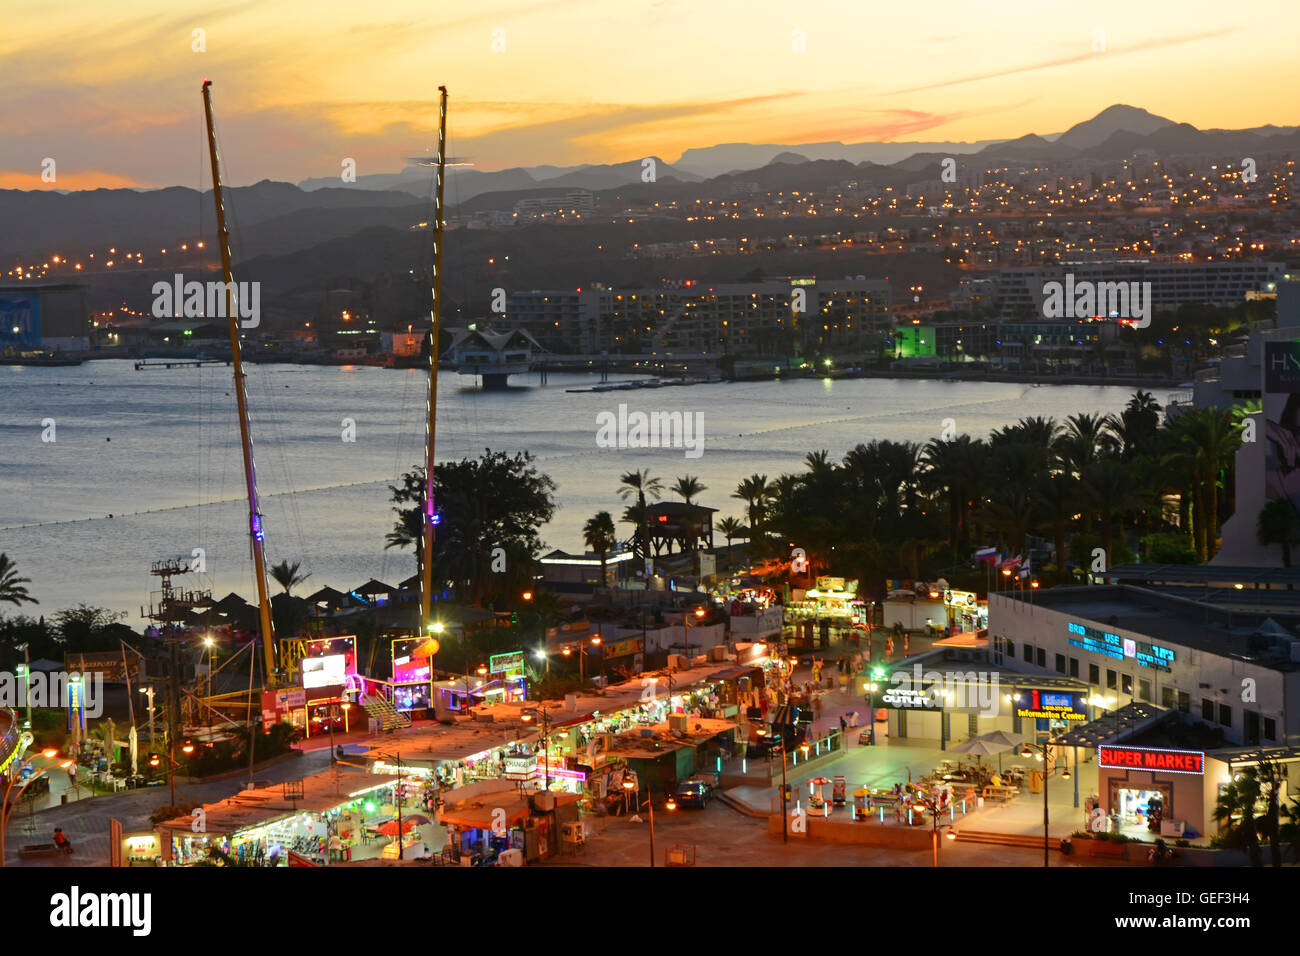 Eilat tourism city, Evening colors Stock Photo